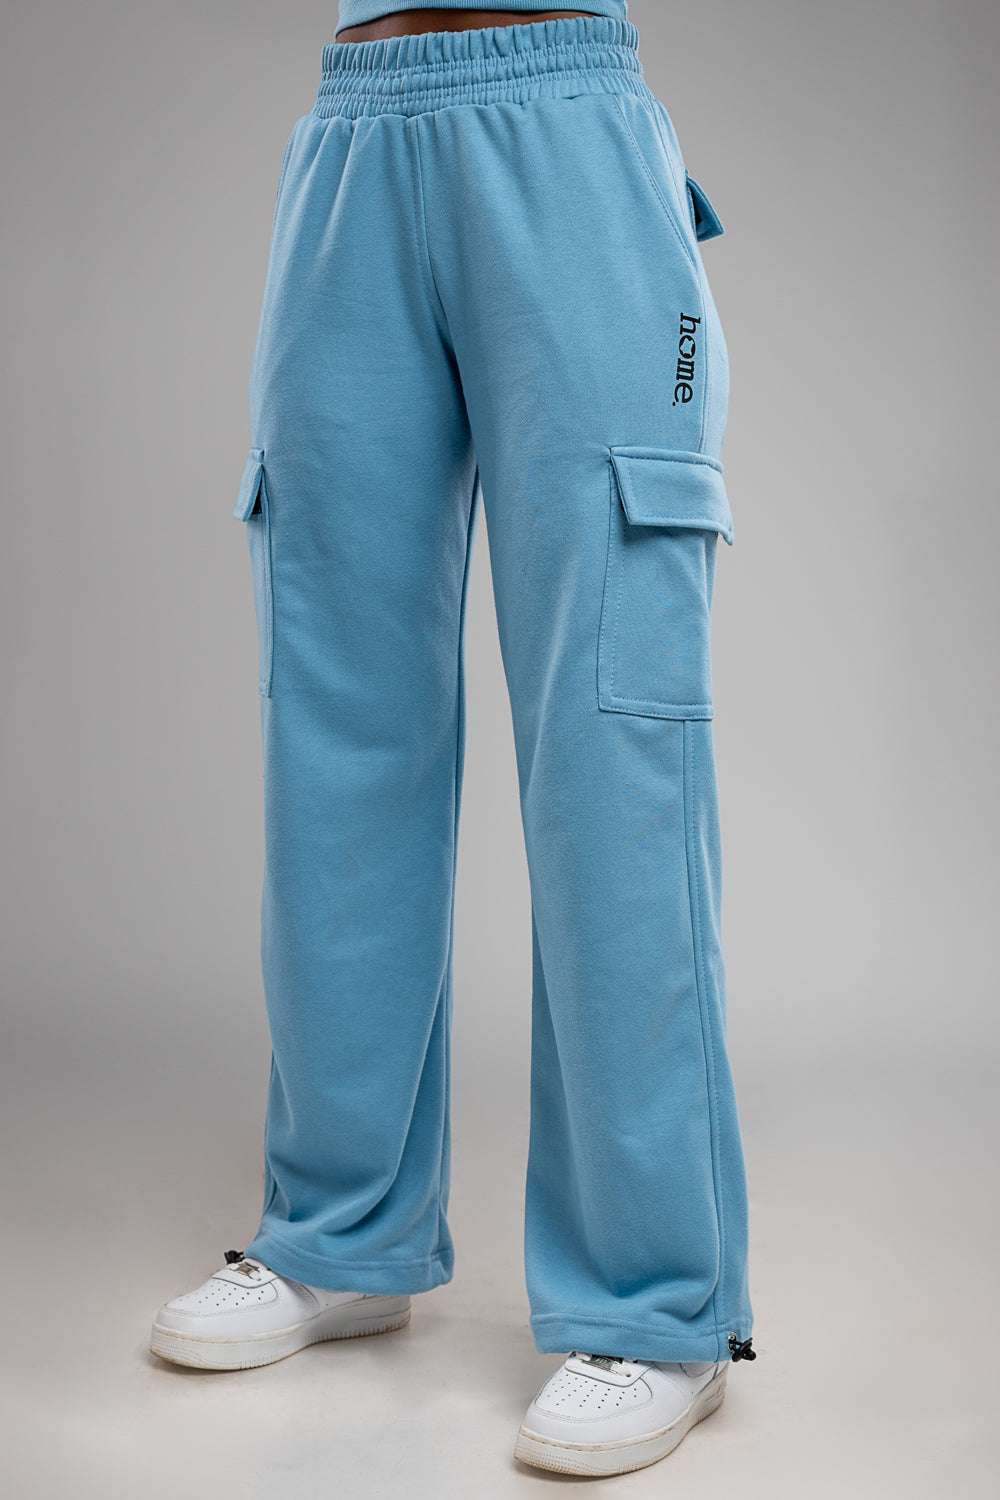 Maven Pants - Vivid Blue (Mid - Heavy)